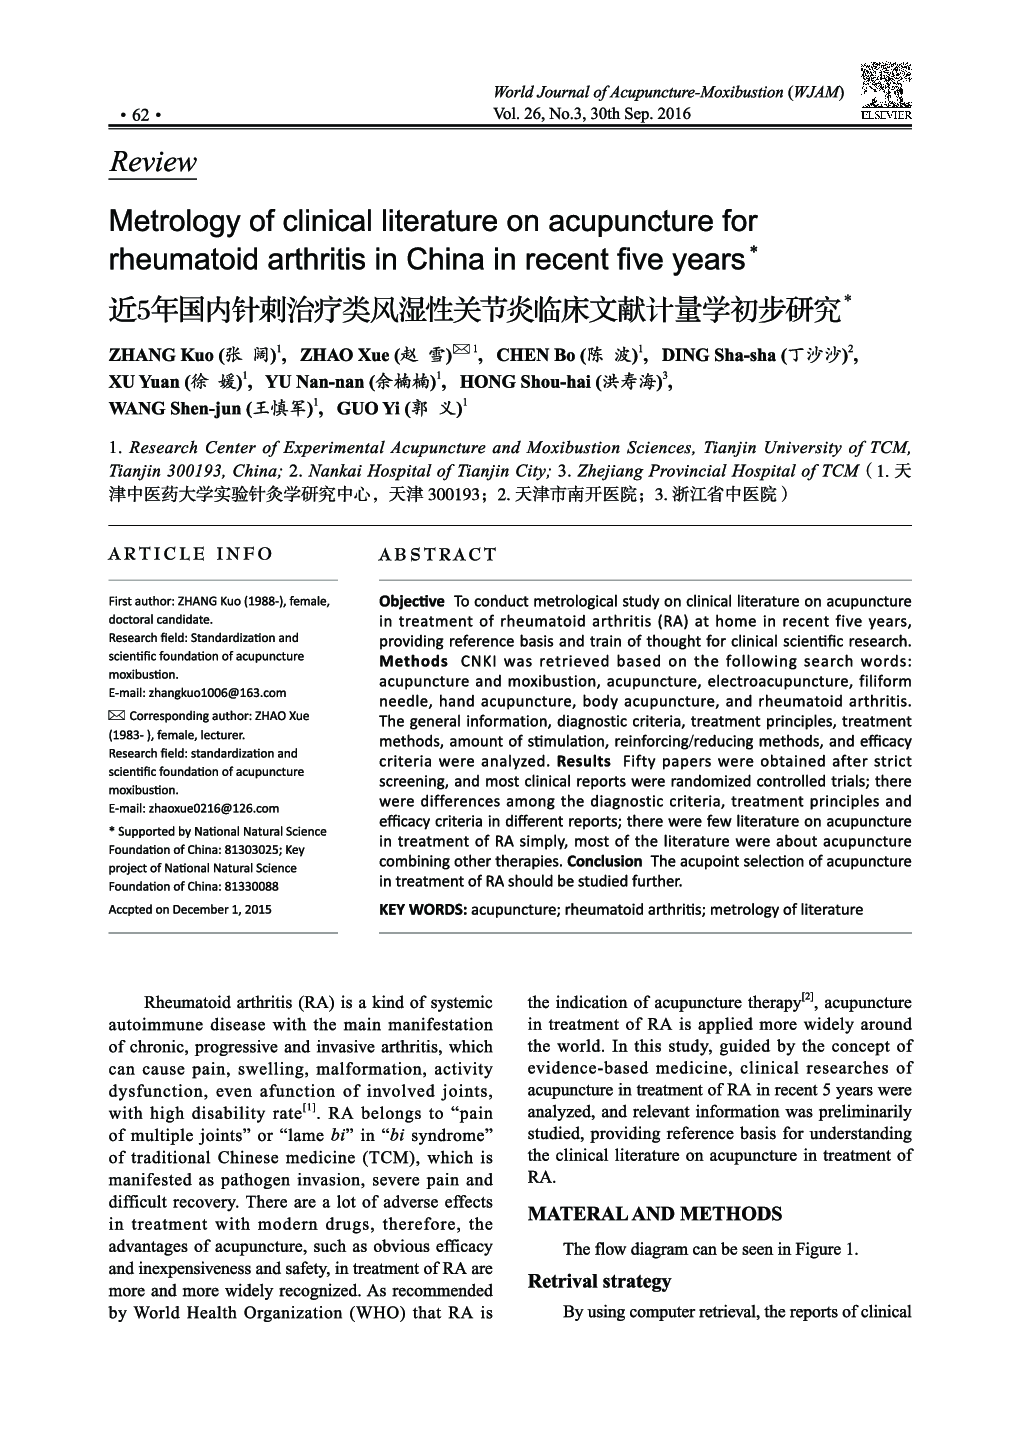 مترولوژی ادبیات بالینی در مورد طب سوزنی برای آرتریت روماتوئید در چین در پنج سال اخیر 